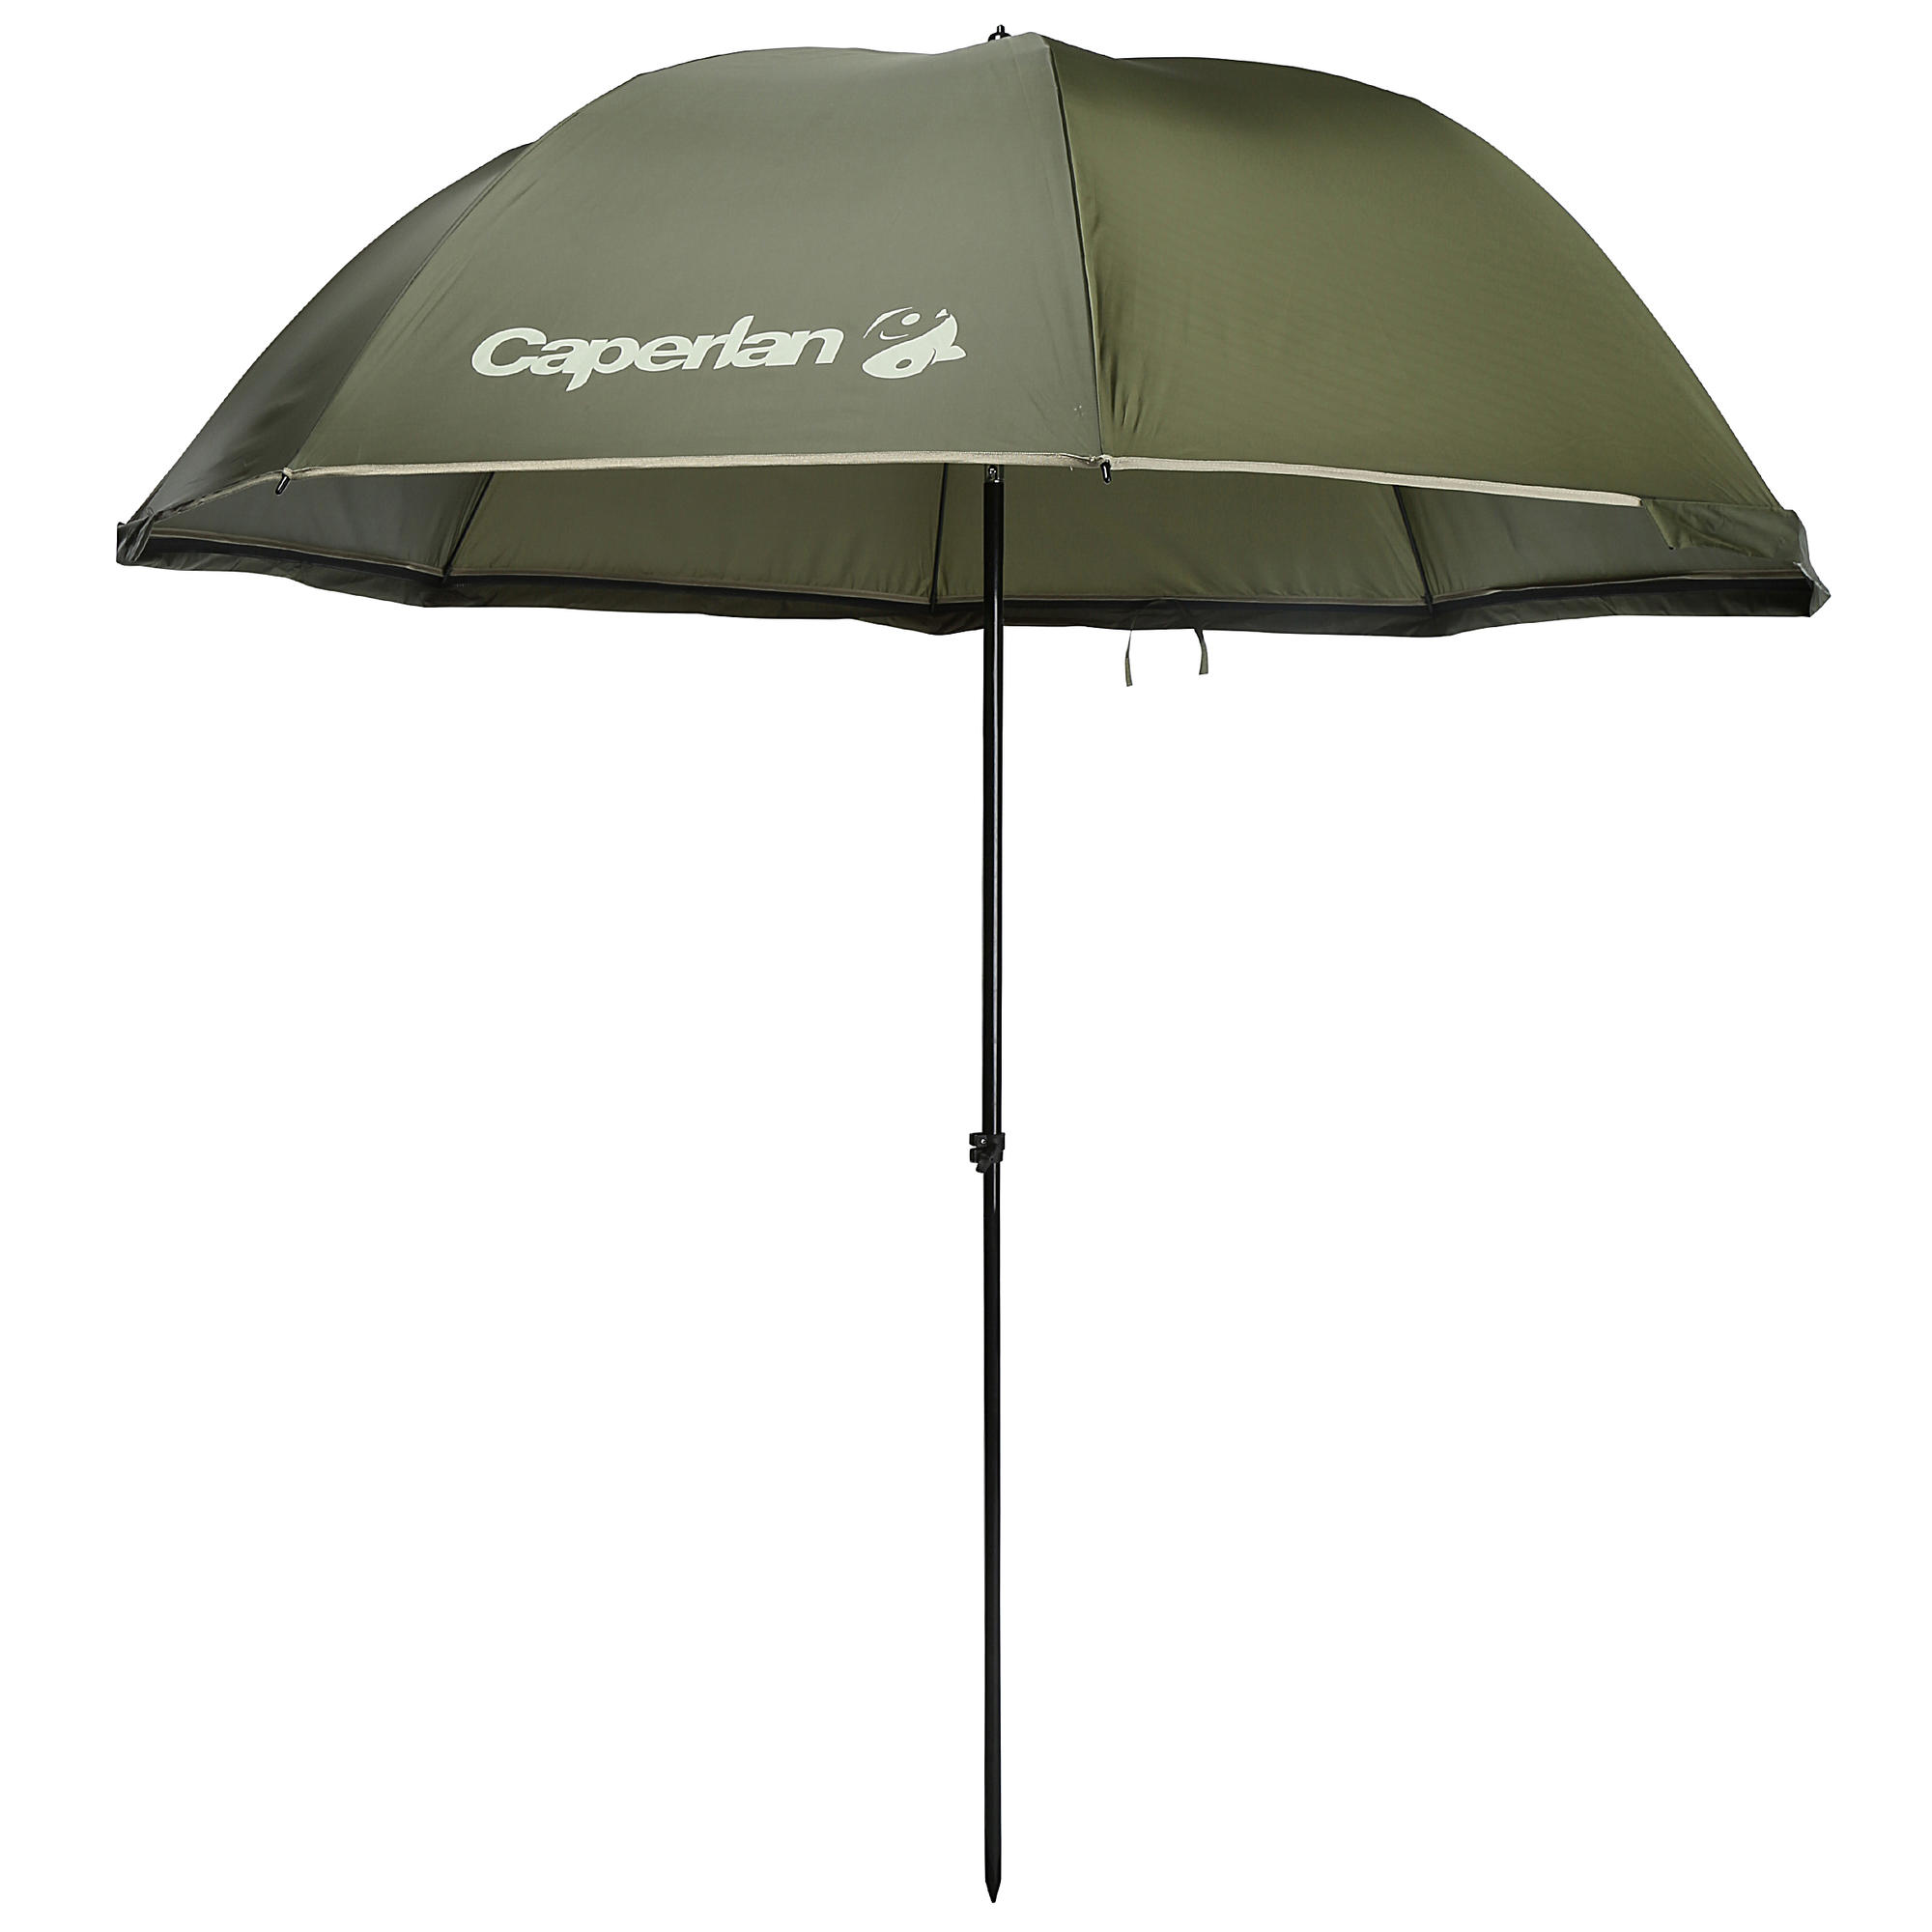 Size-L fishing umbrella | Caperlan